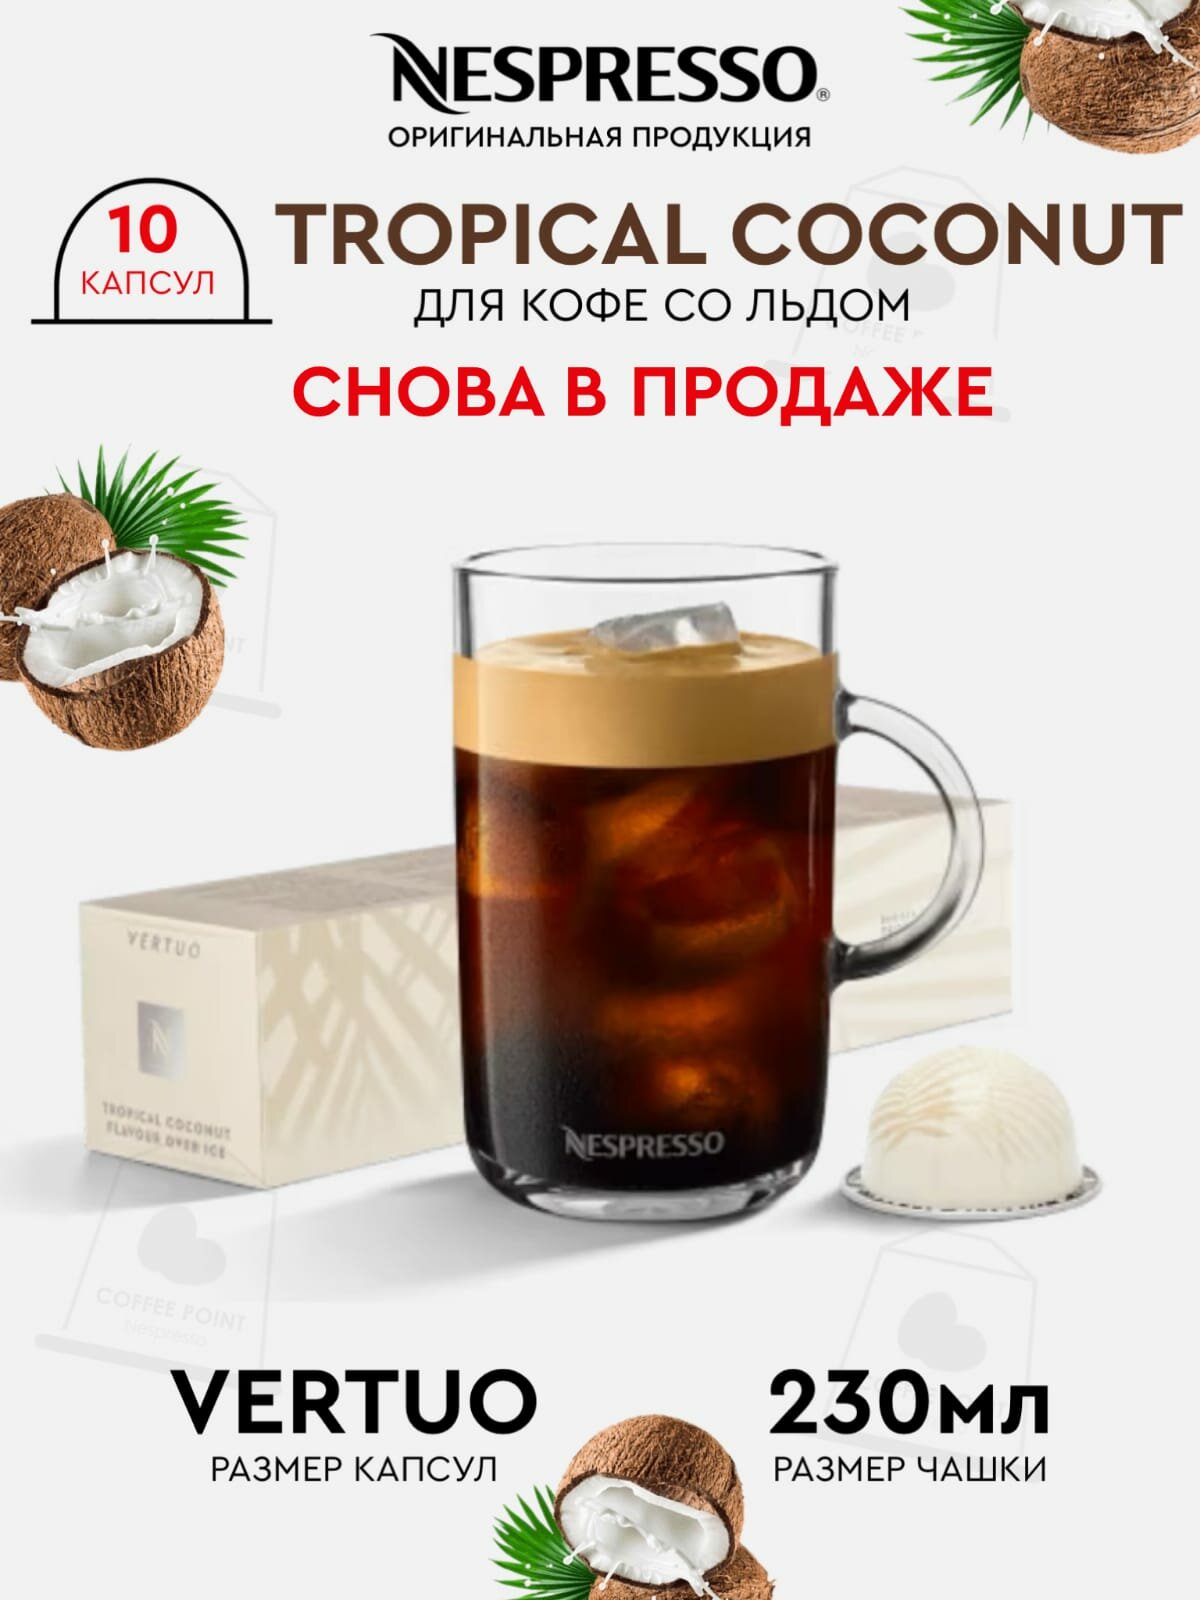 Кофе в капсулах, Nespresso Vertuo, TROPICAL COCONUT, 230ml, кофе в капсулах, для капсульных кофемашин, кофе со льдом, оригинал, неспрессо , 10шт